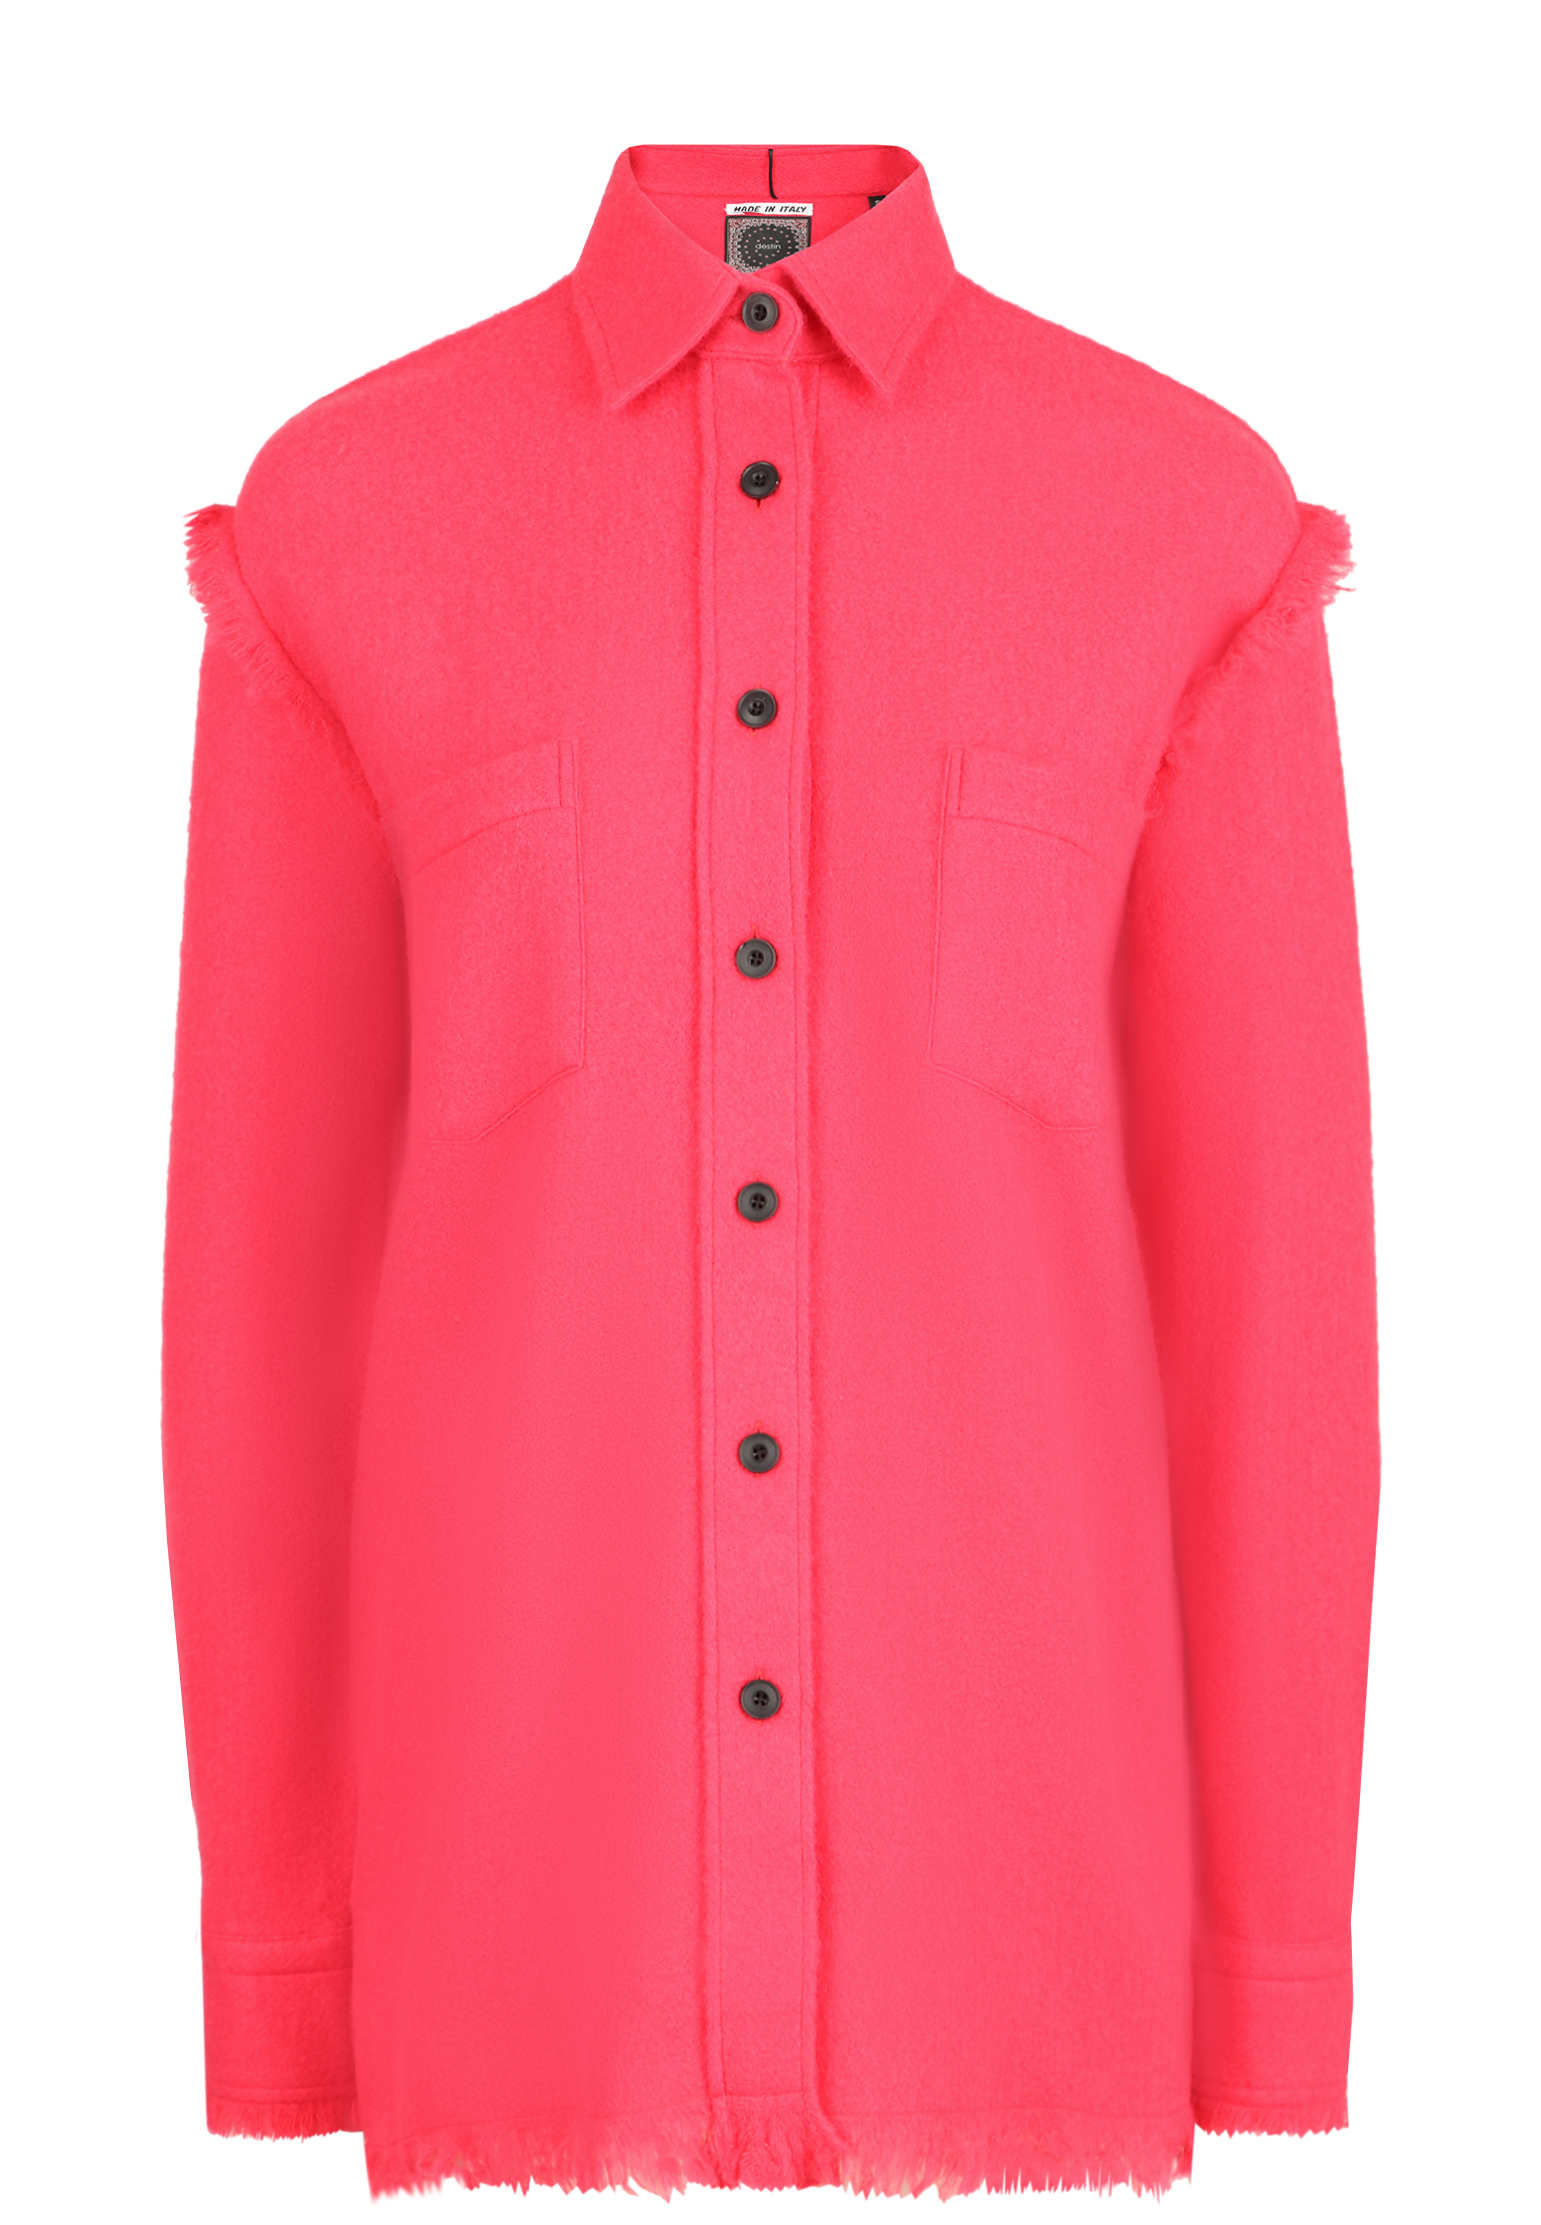 Рубашка DESTIN Розовый, размер S 145303 - фото 1